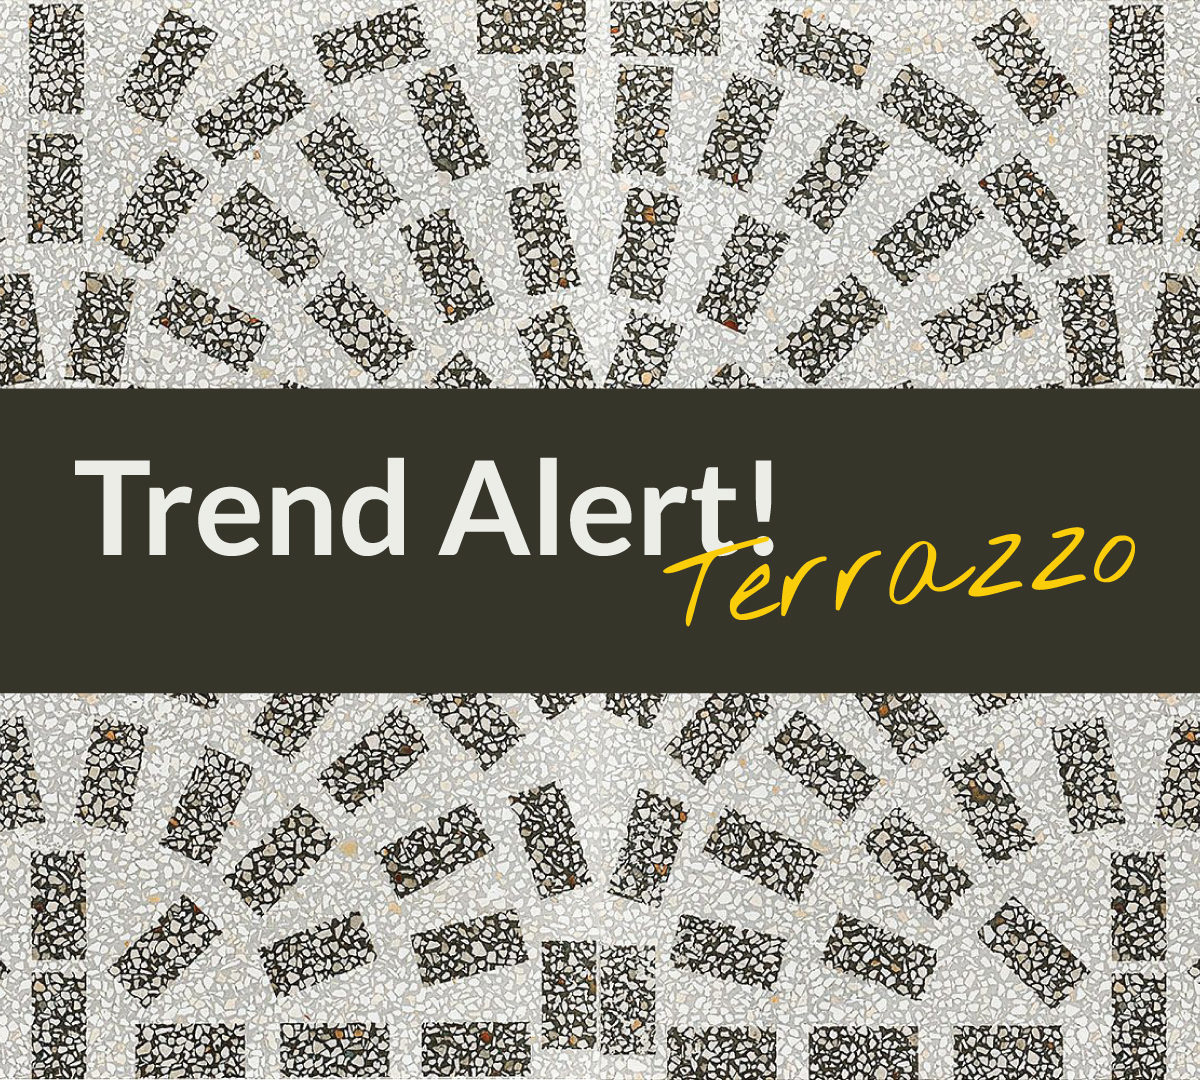 Trend Alert: Terrazzo hits 2020 market strong!